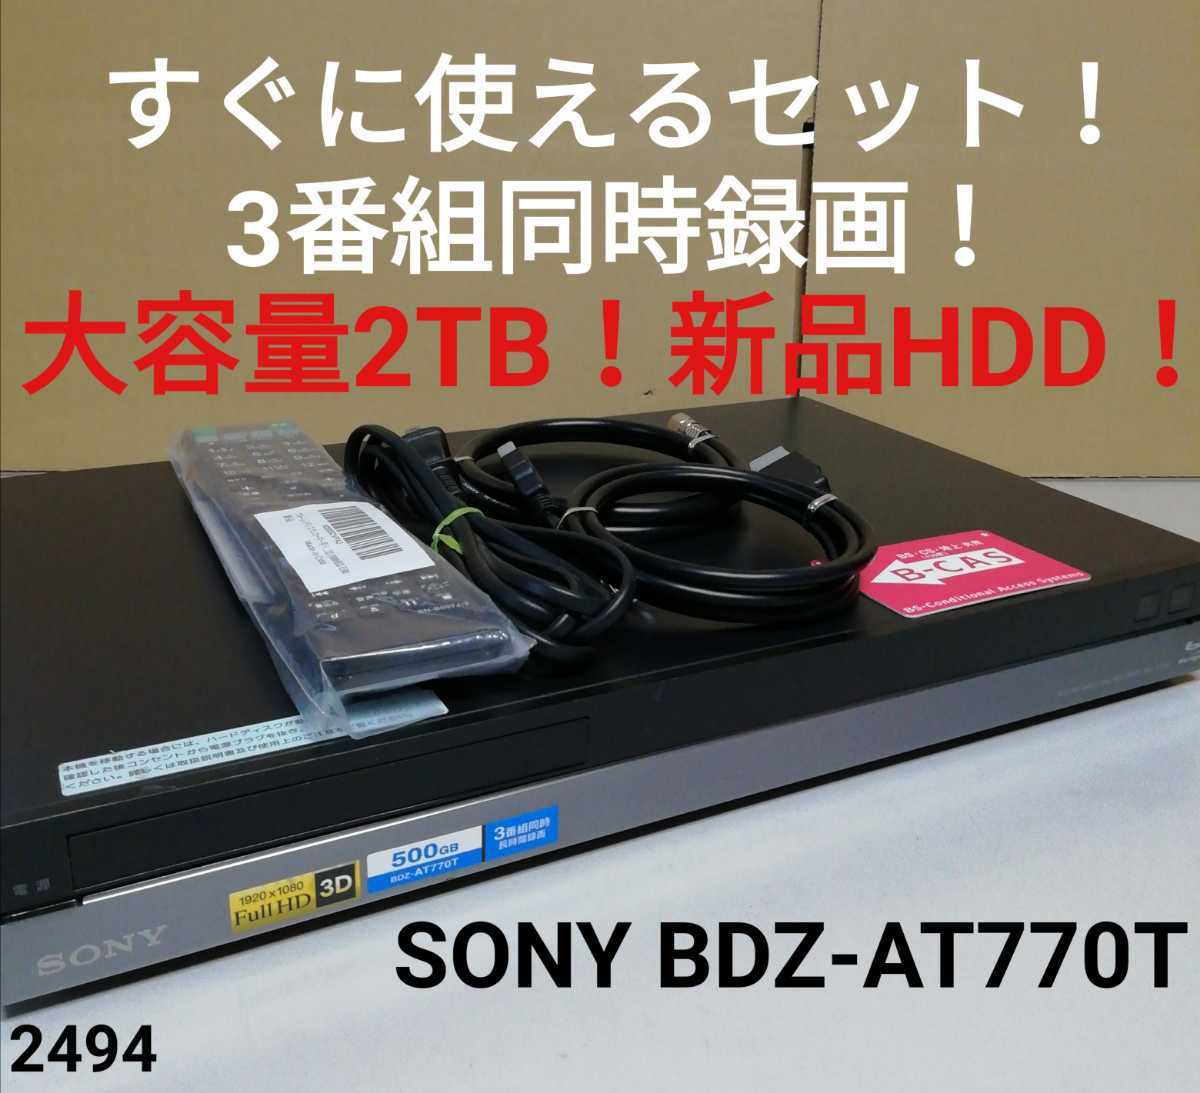 驚きの値段で】 SONY BDZ-AT700 2番組同時録画 大容量2TB新品HDDに交換